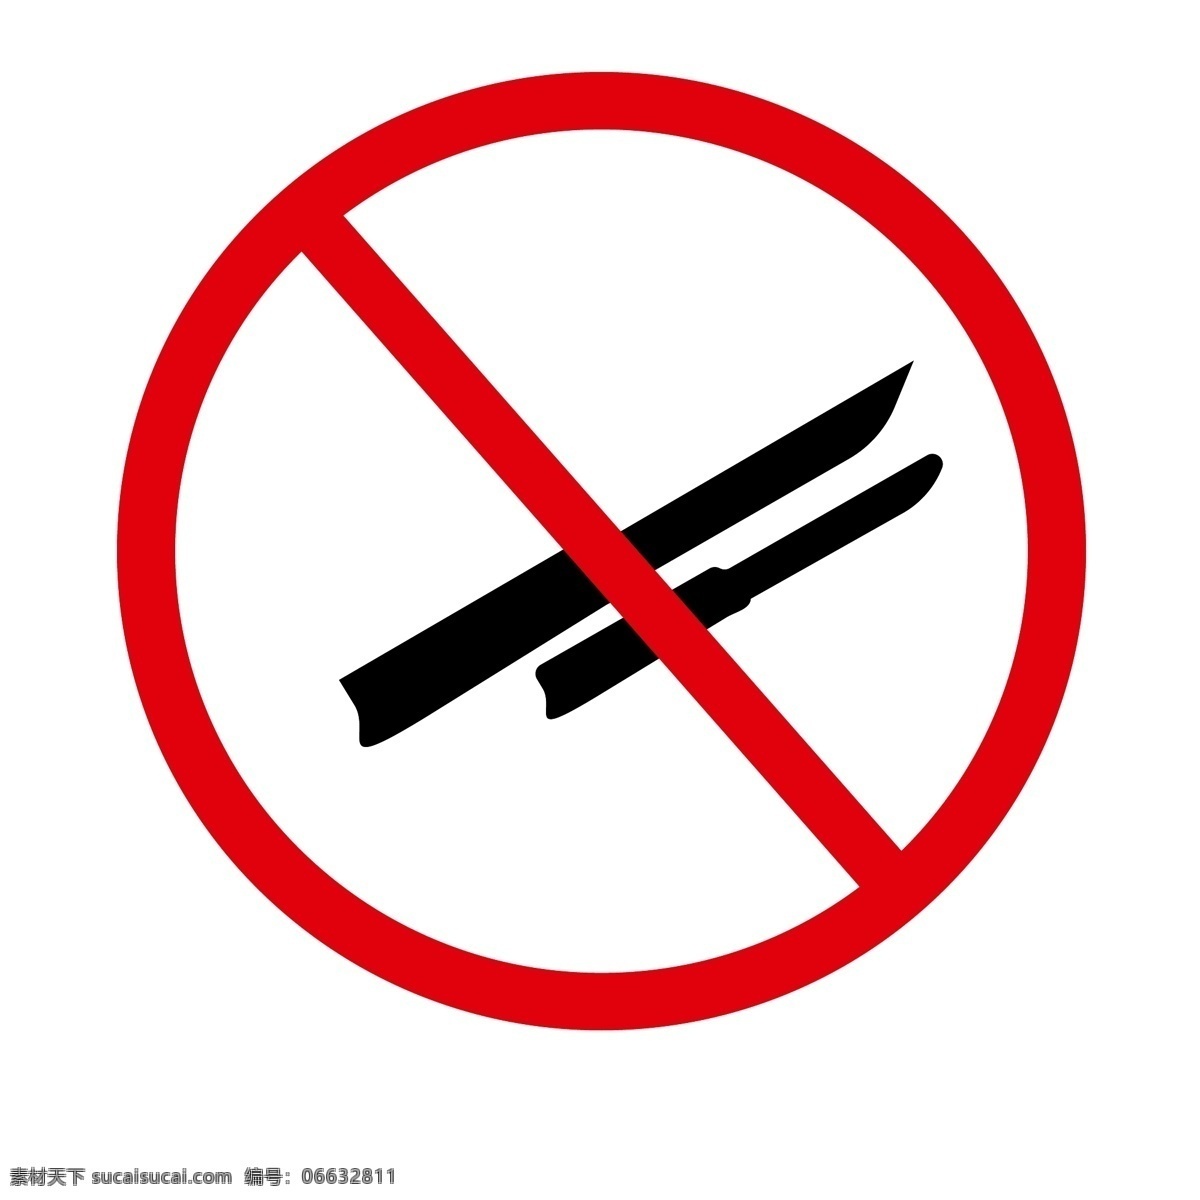 严禁携带刀具 黑色刀具 警示标 红色